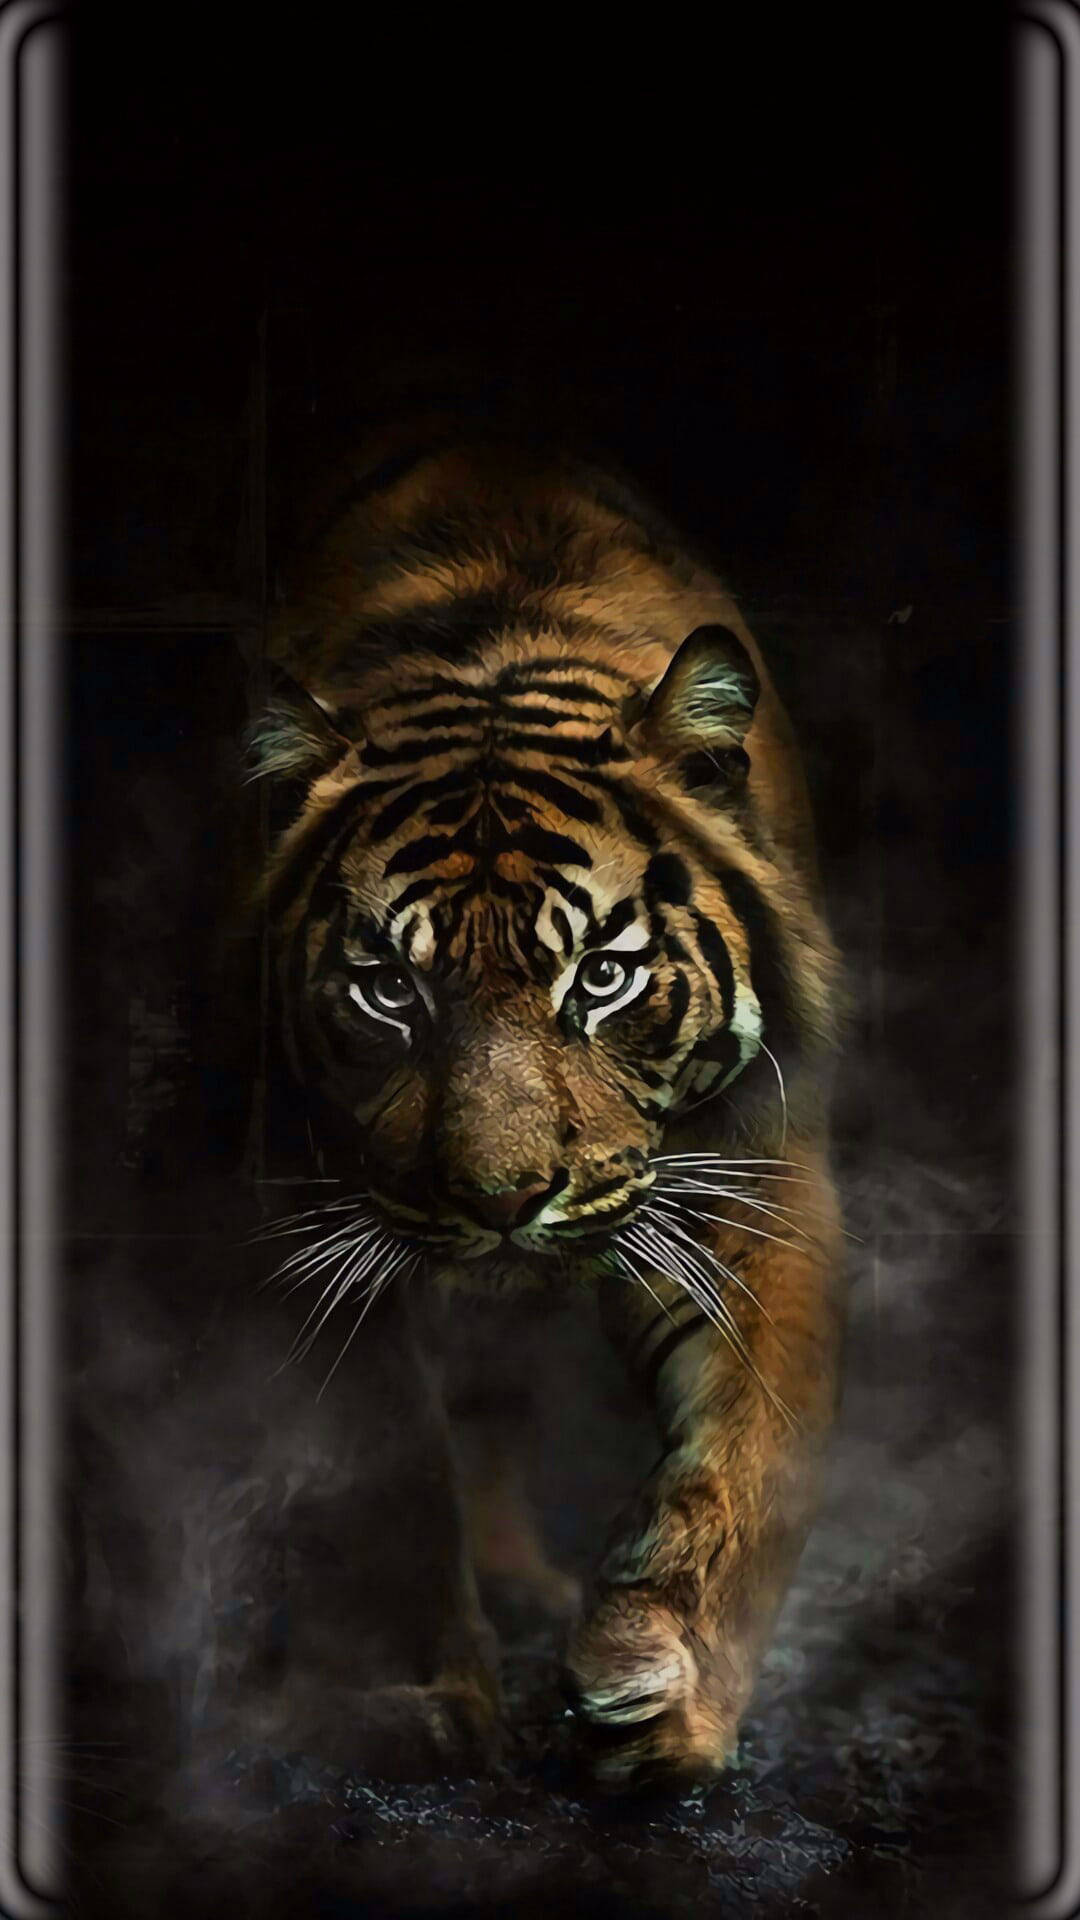 Tiger With Black Tiger Stripes Background